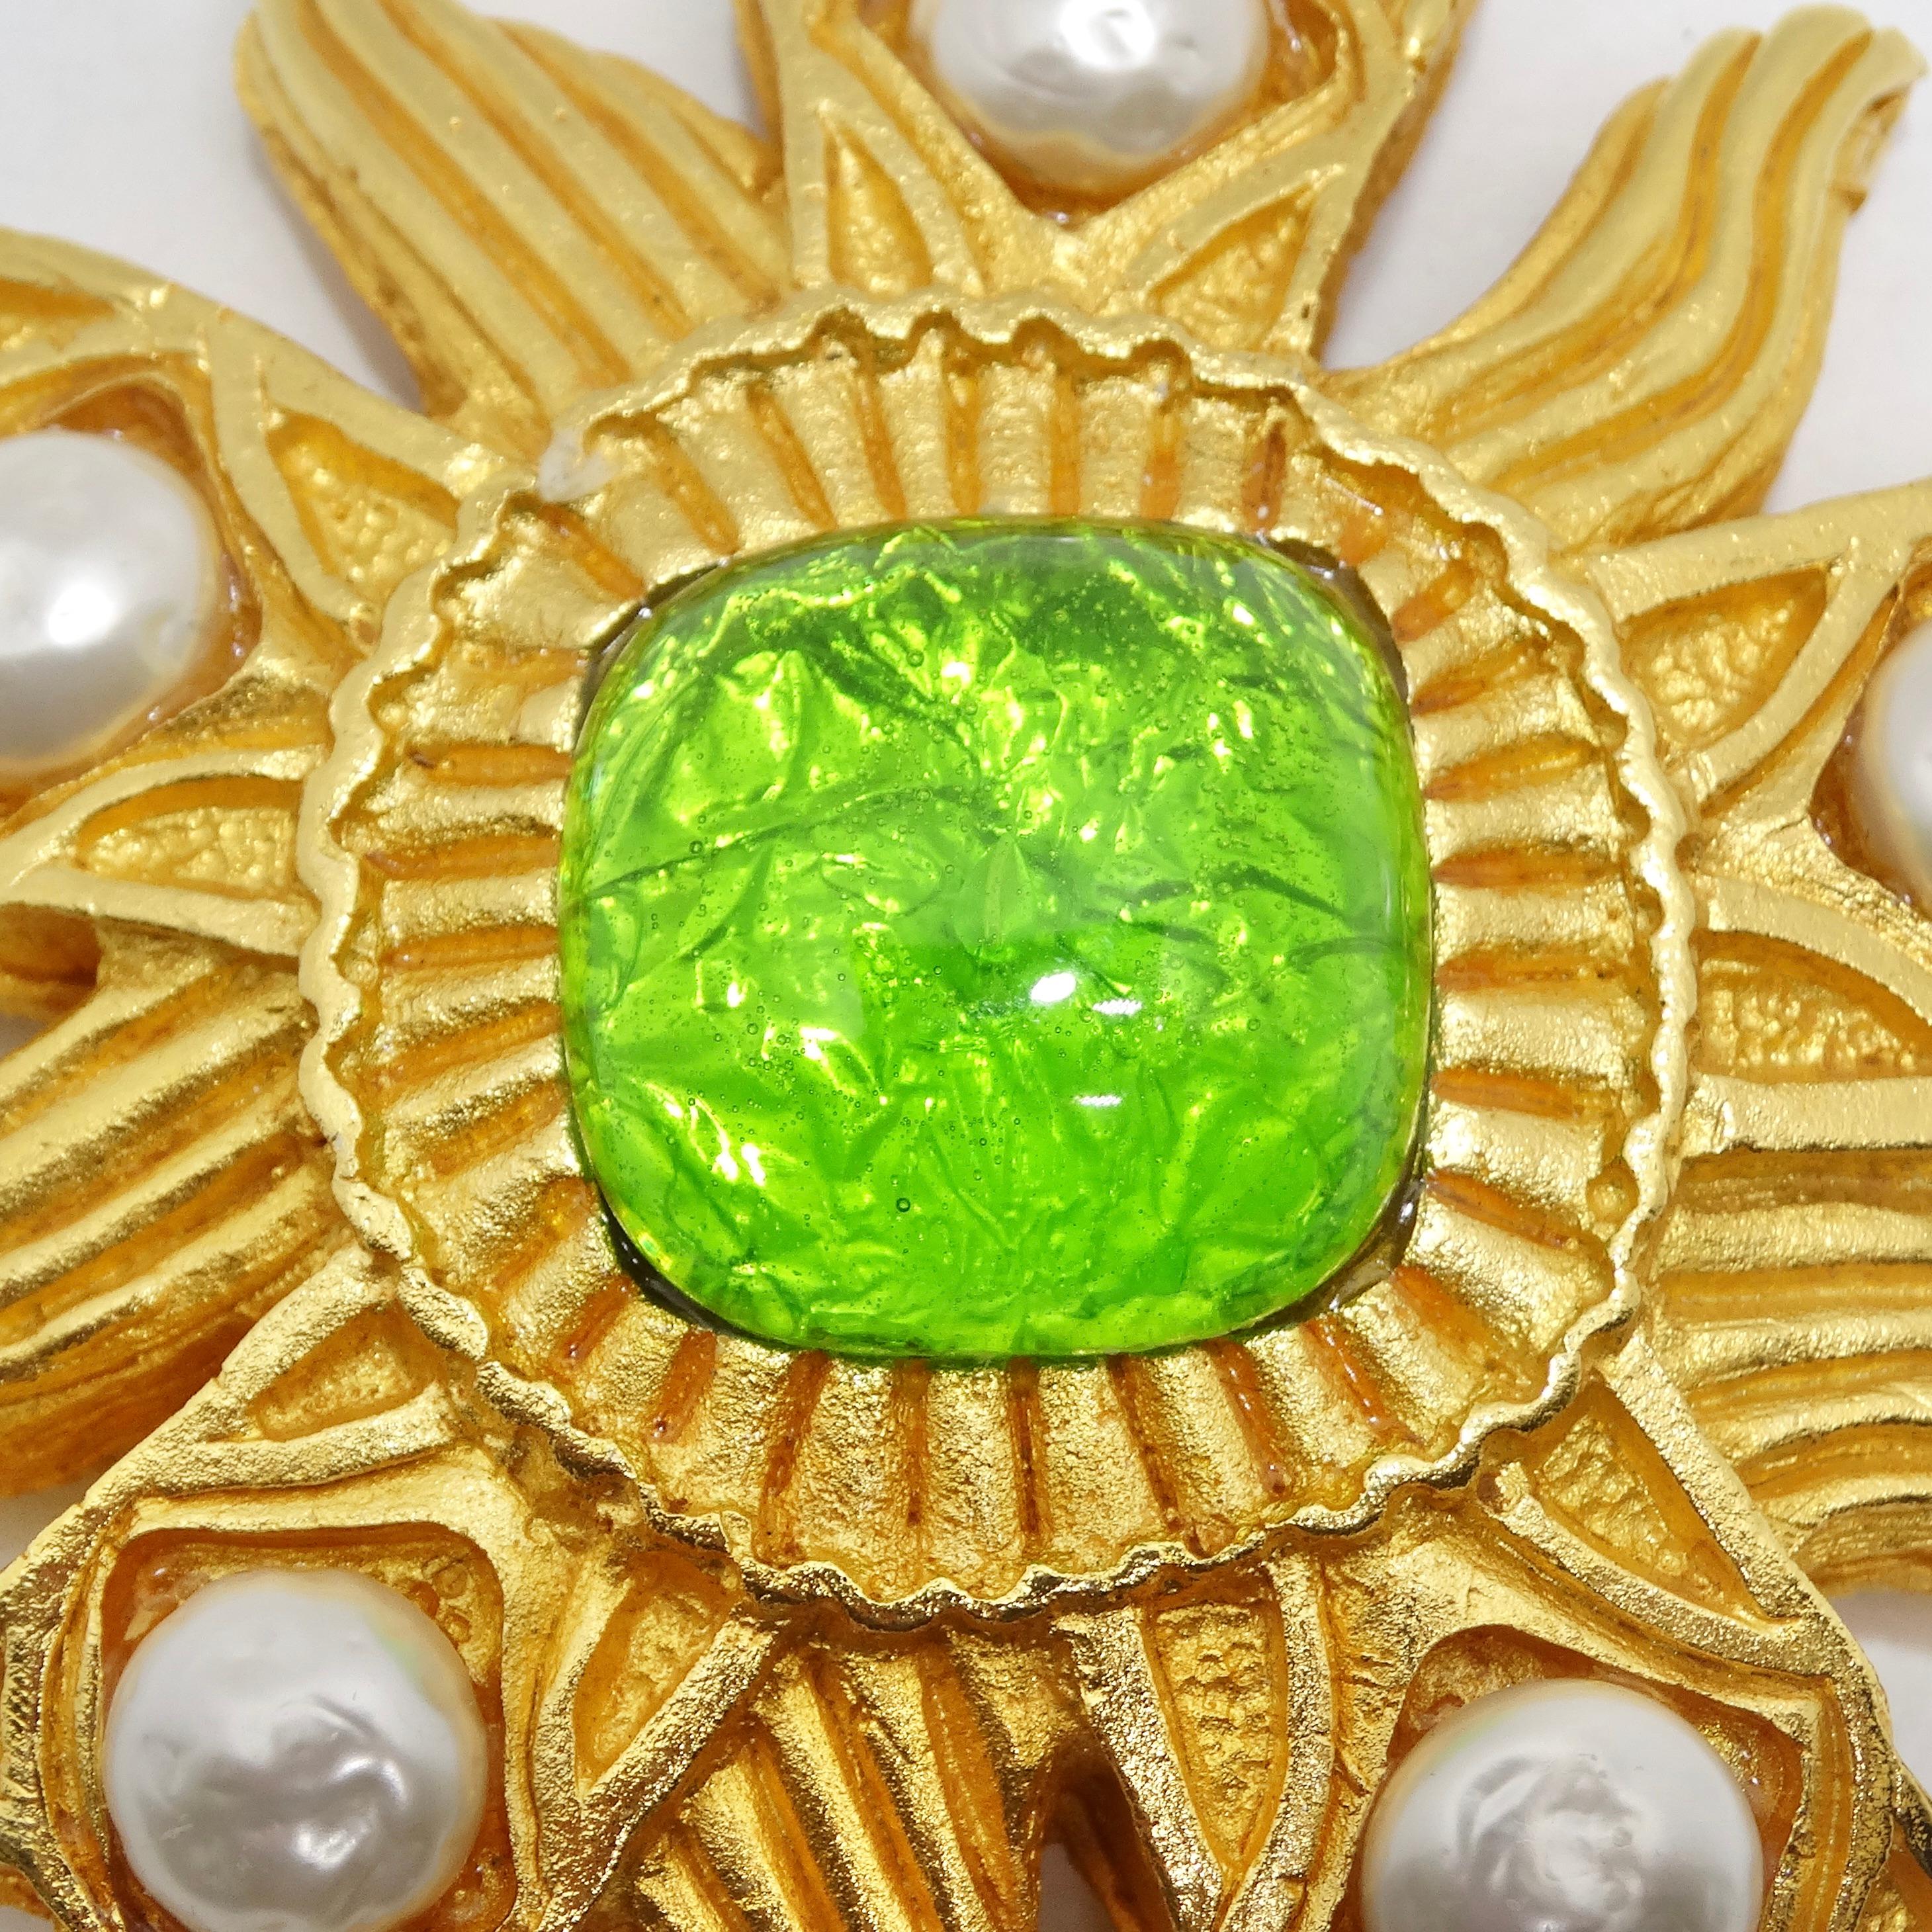 Die Dominique Aurientis Paris Gold Plated Green Stone Flower Brooch ist ein wunderschönes Schmuckstück aus den 1980er Jahren. Diese wunderschöne große Blumenbrosche besticht durch ihre strukturierte Gelbgoldplattierung, die ein kompliziertes und